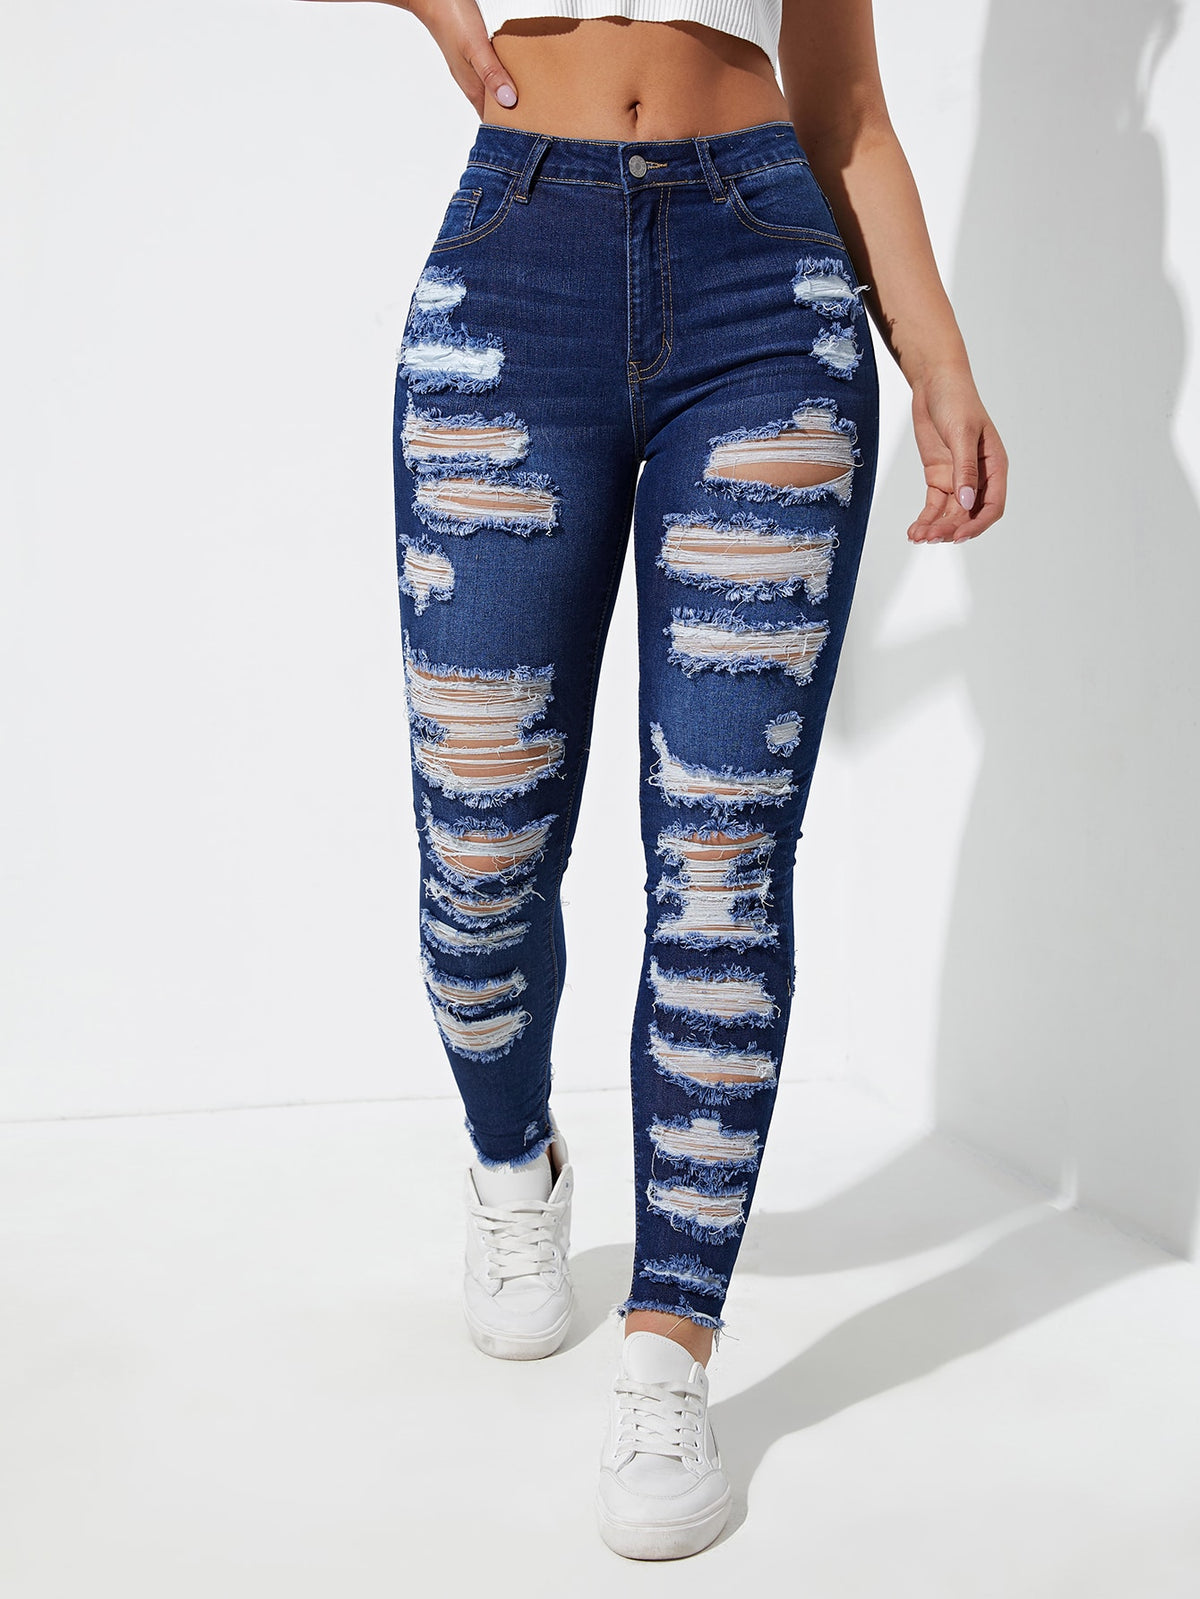 Distressed Skinny Jeans with Raw Hem